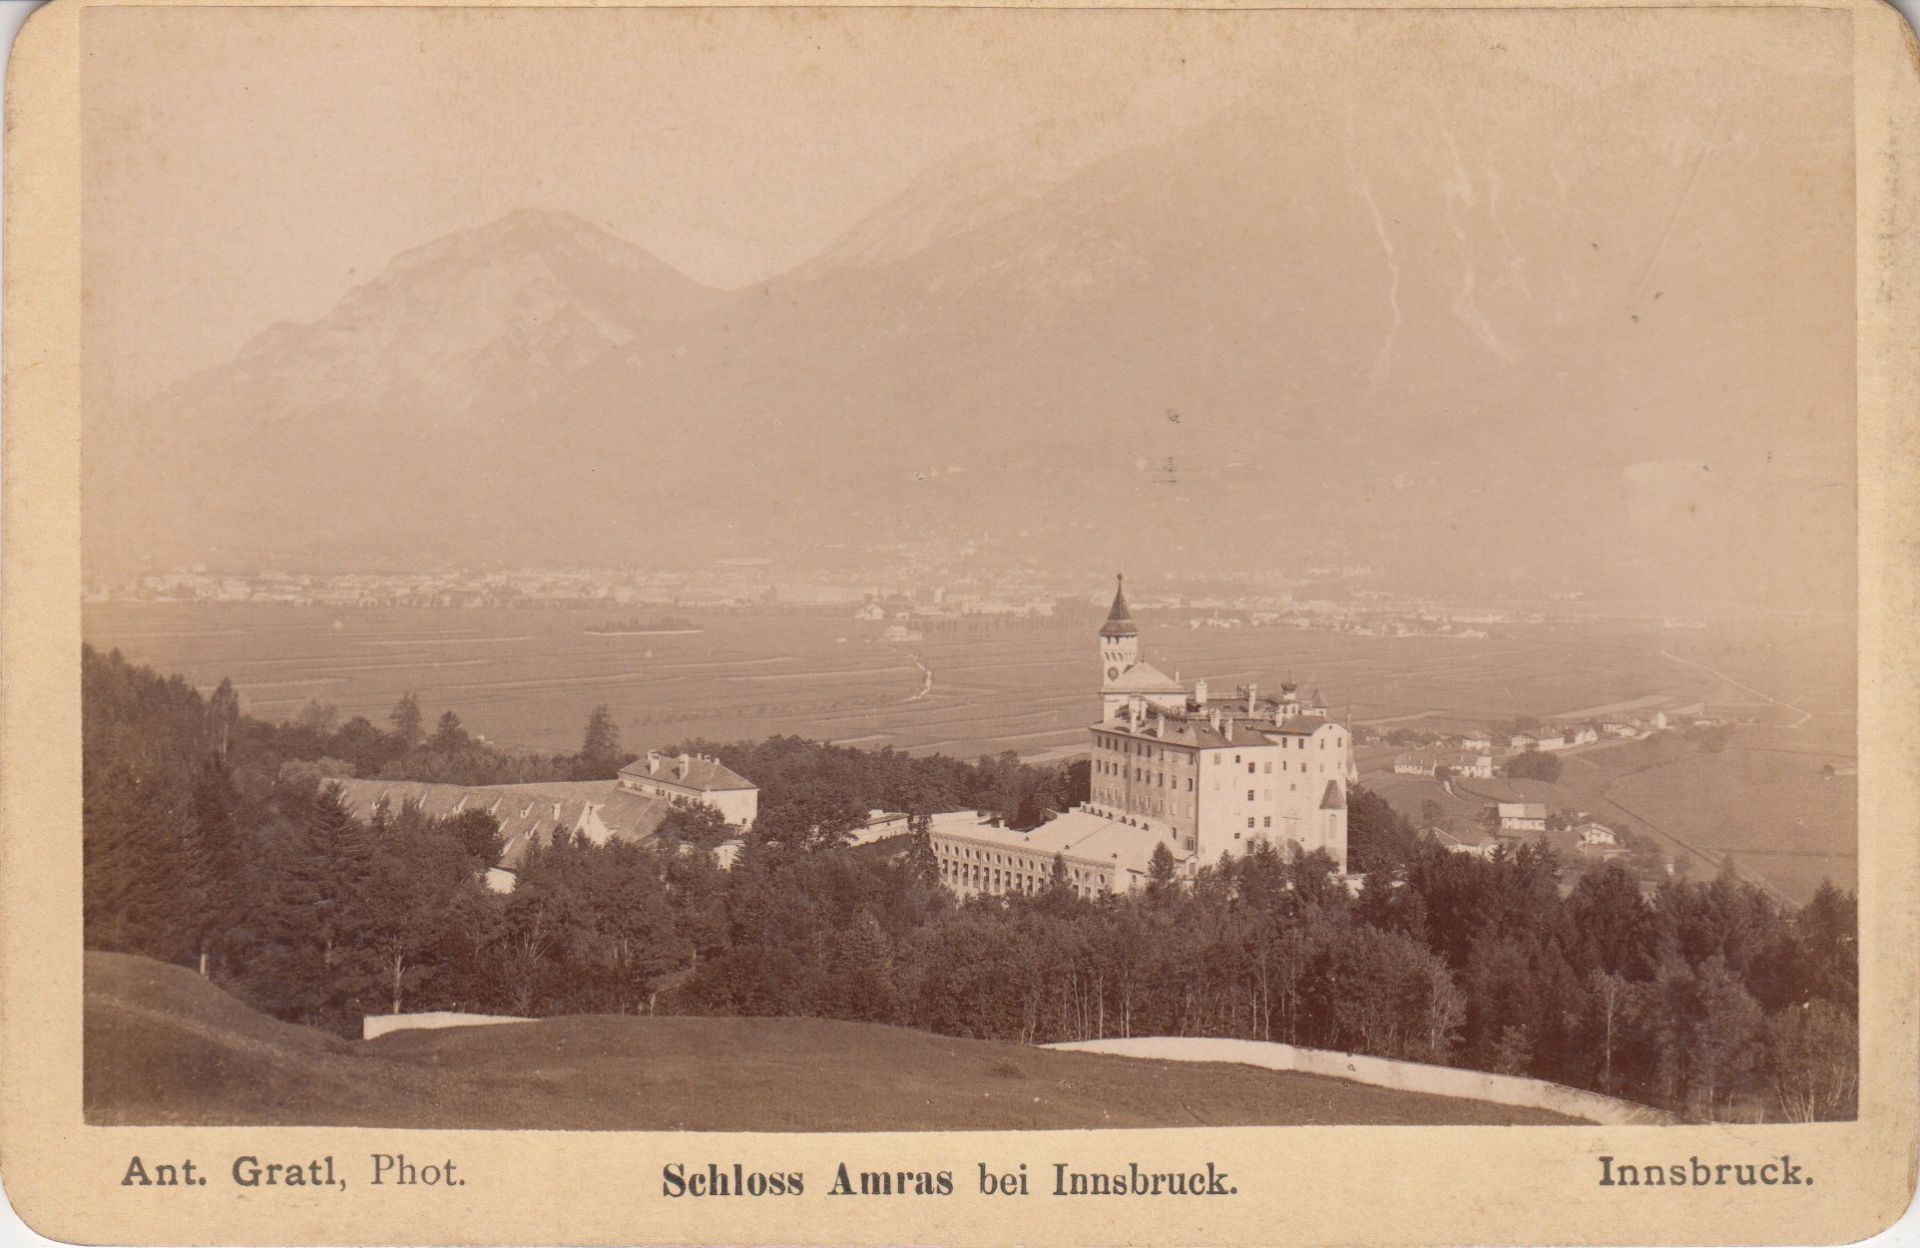  Schloss Amras bei Innsbruck.